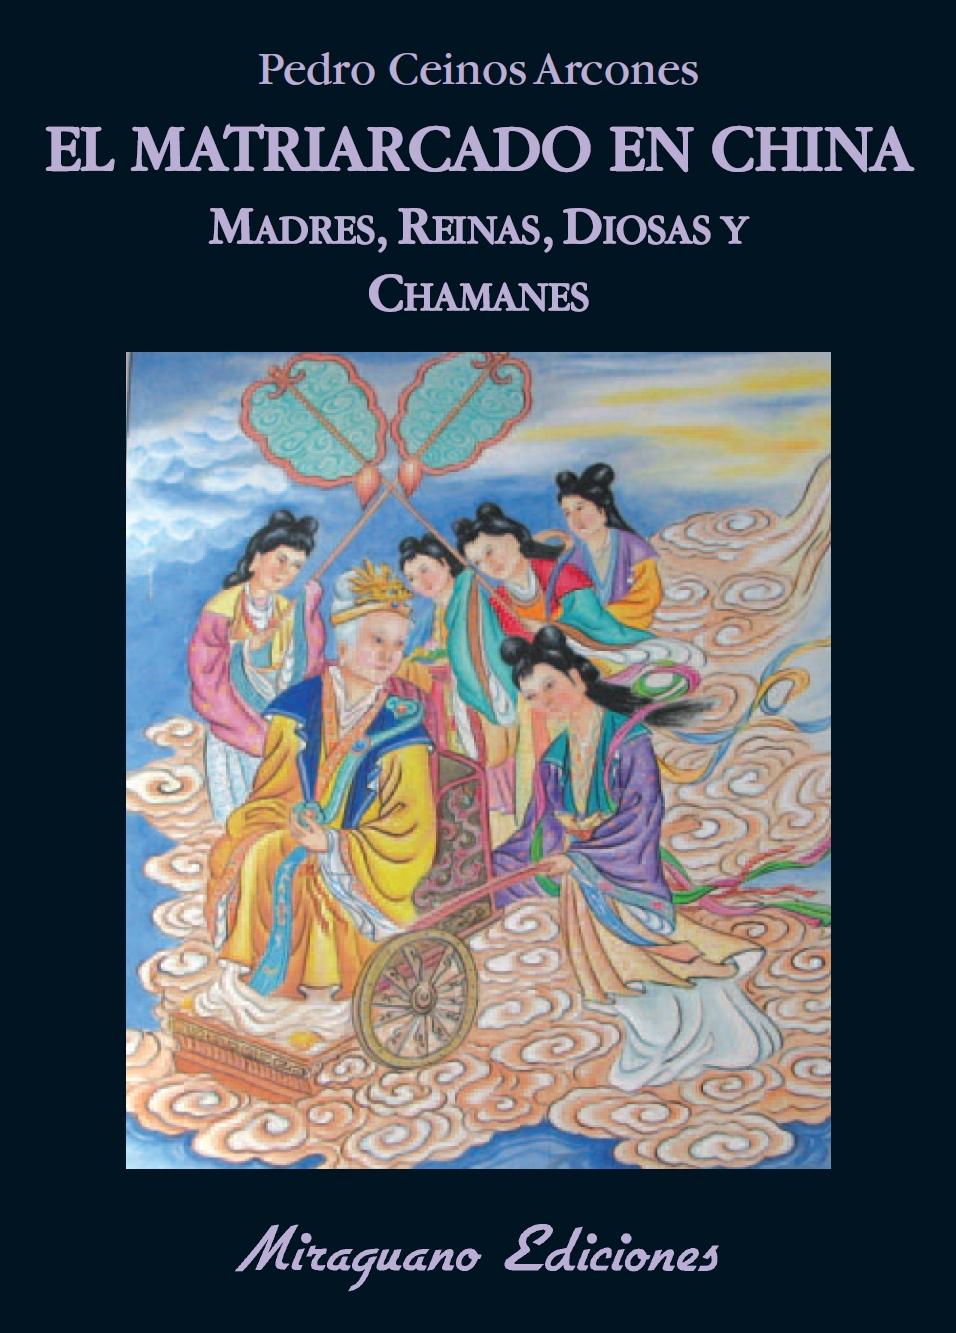 El Matriarcado en China "Madres, Diosas, Reinas y Chamanes"